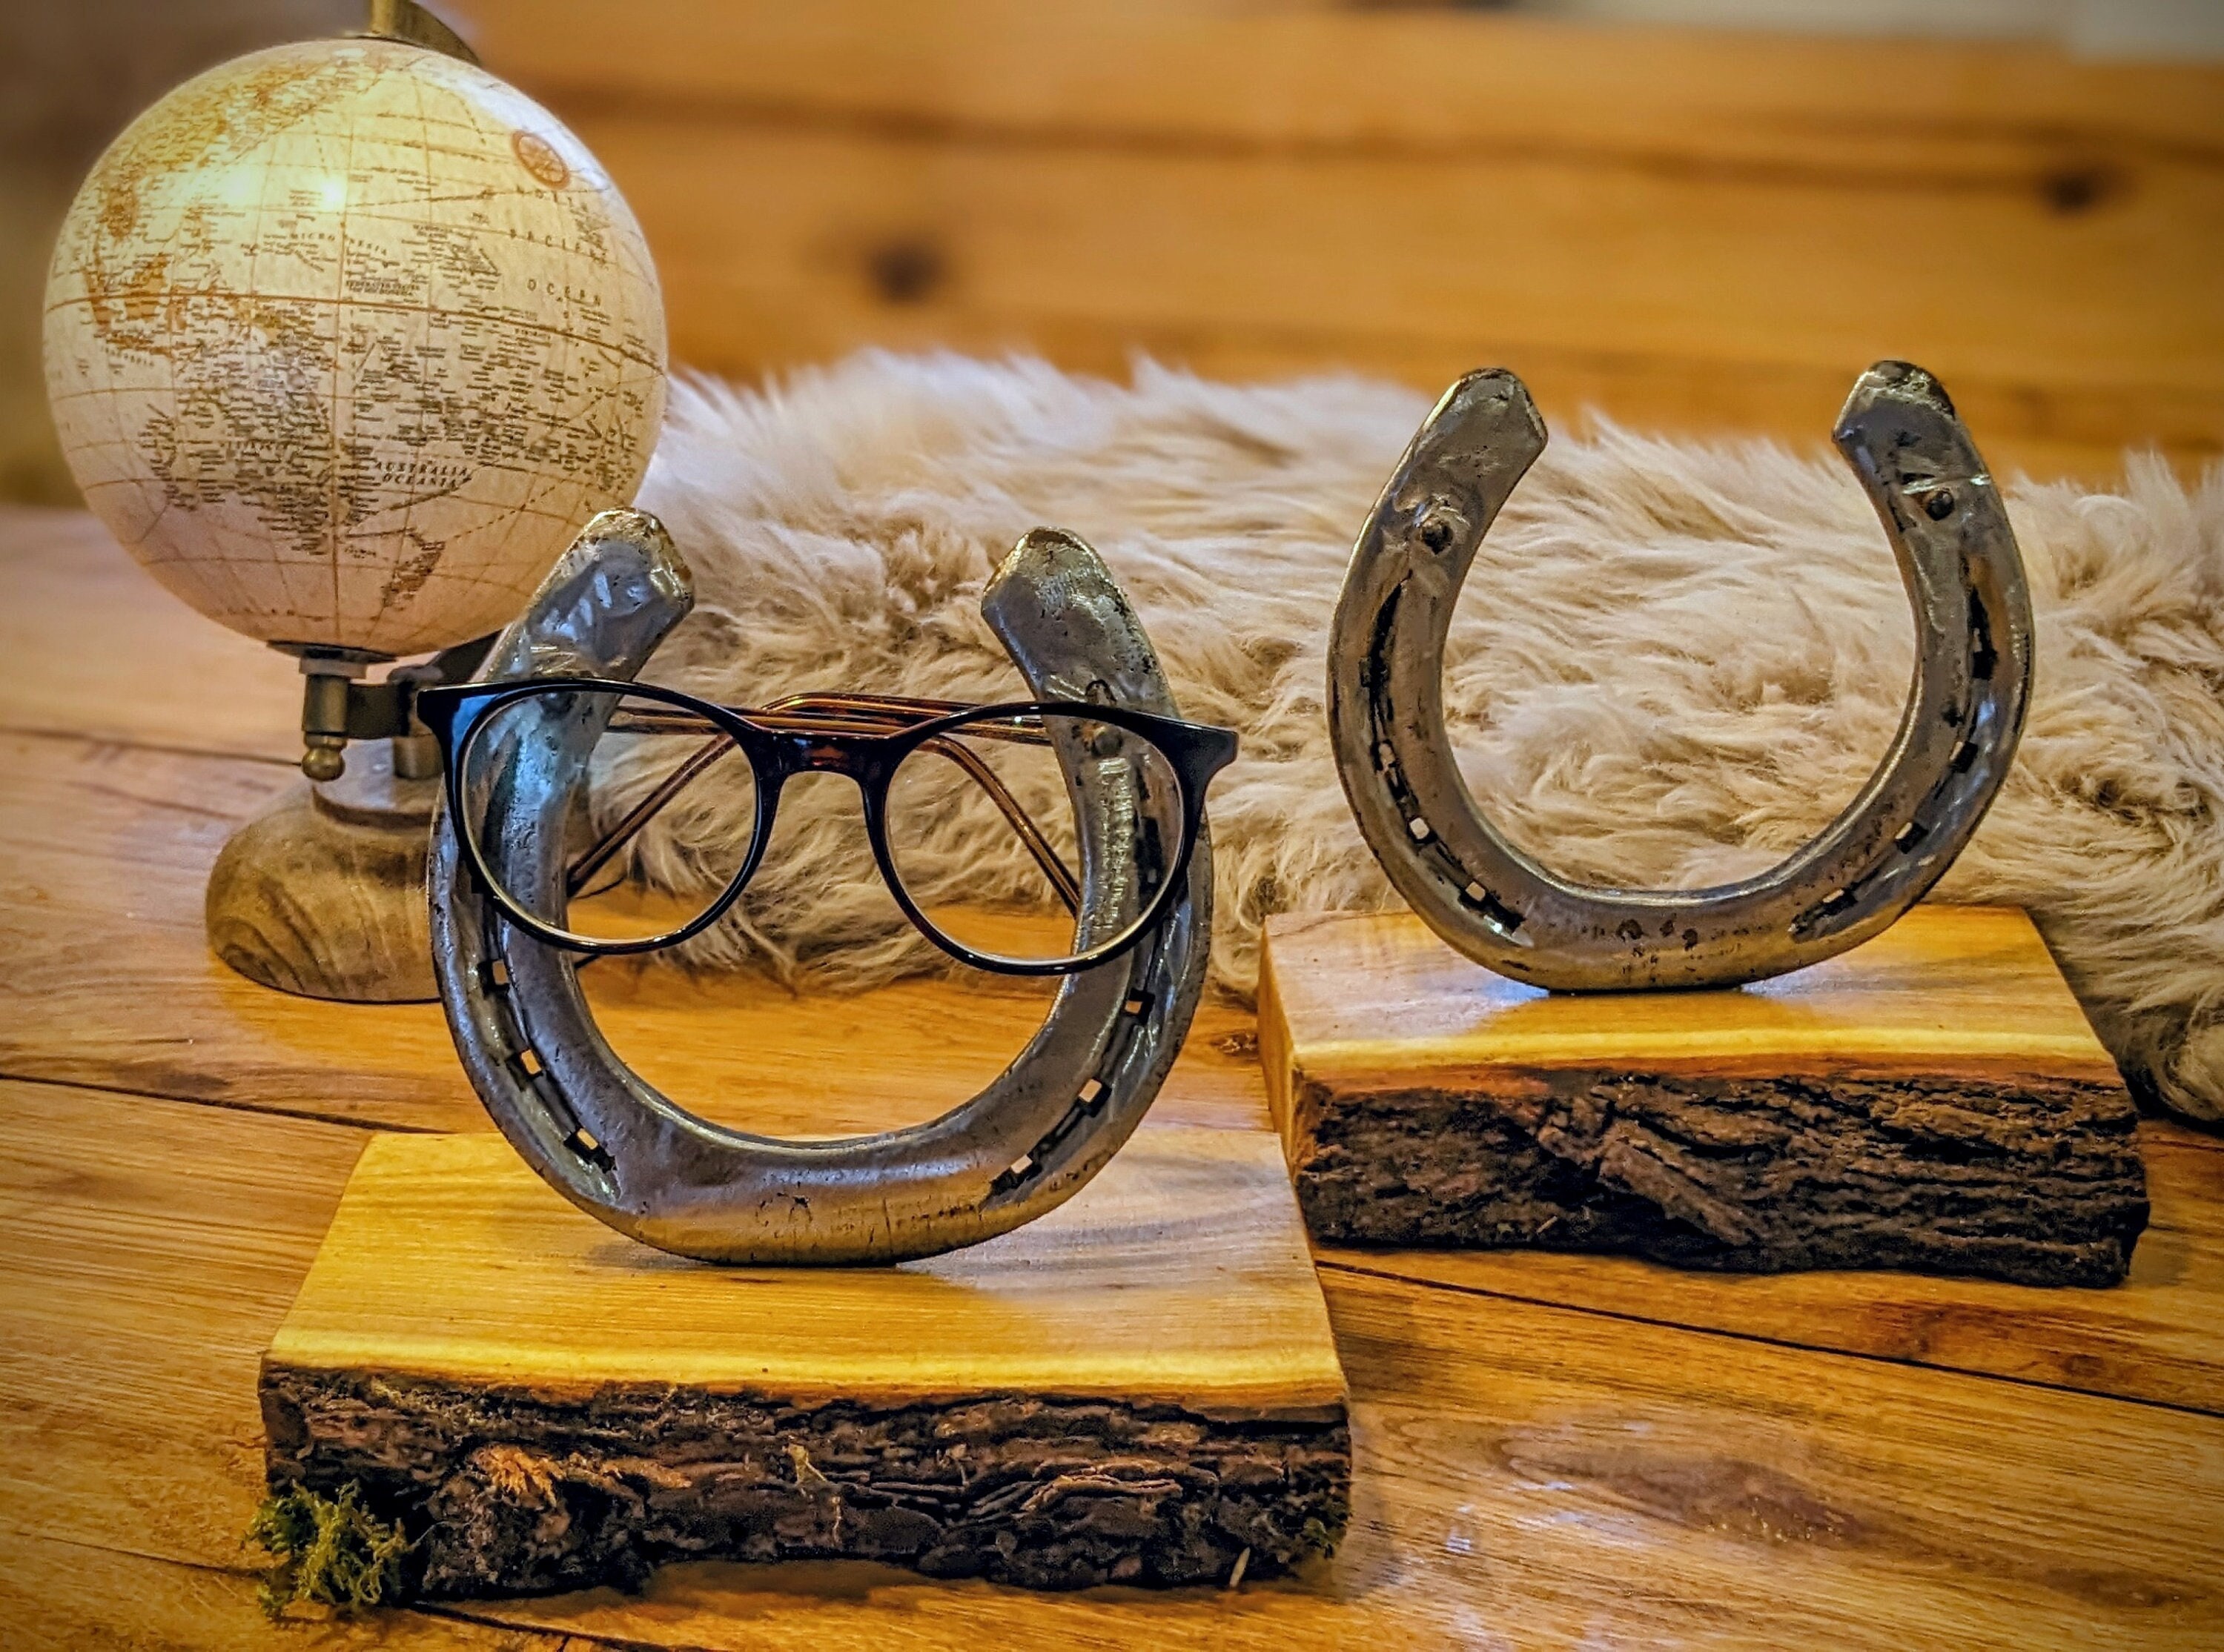 Brillenhalter aus Holz Brillenständer Elch online kaufen